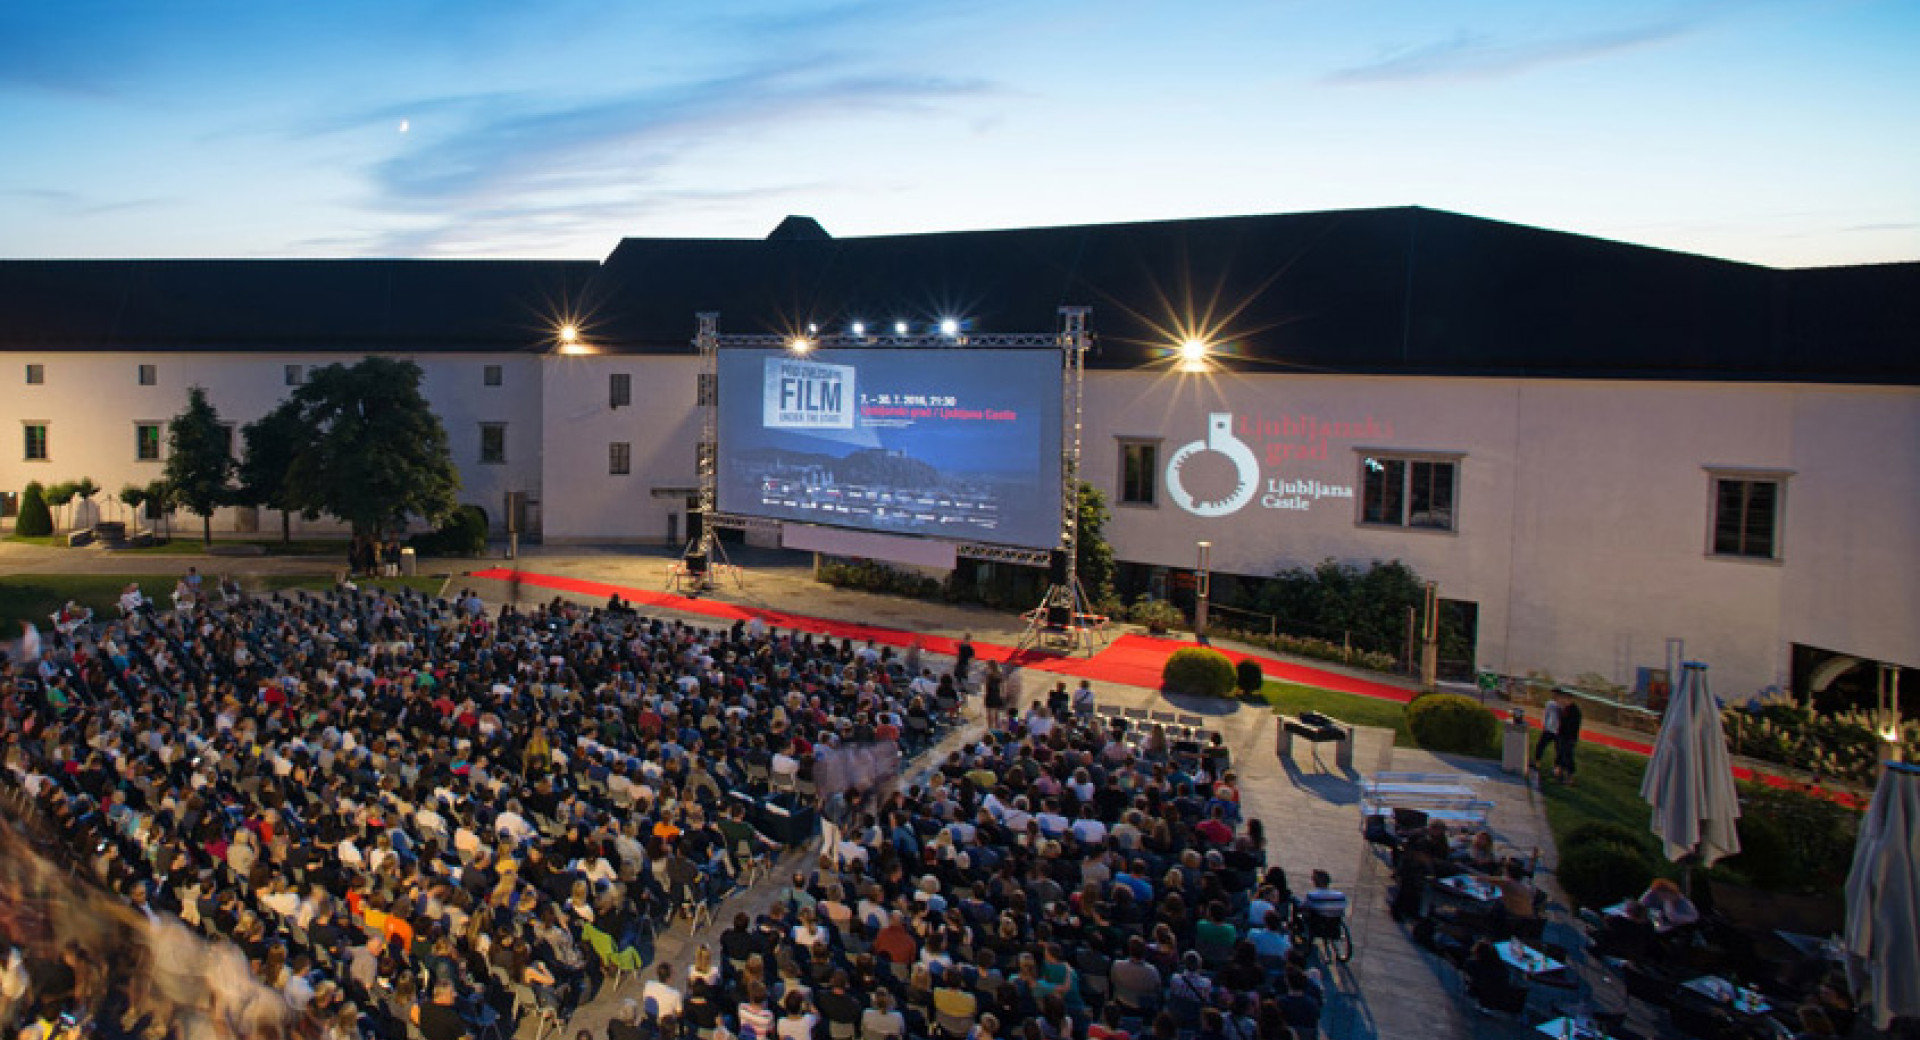 Gledalci projekcije filma na dvorišču Ljubljanskega gradu v okviru prireditve Film pod zvezdami.